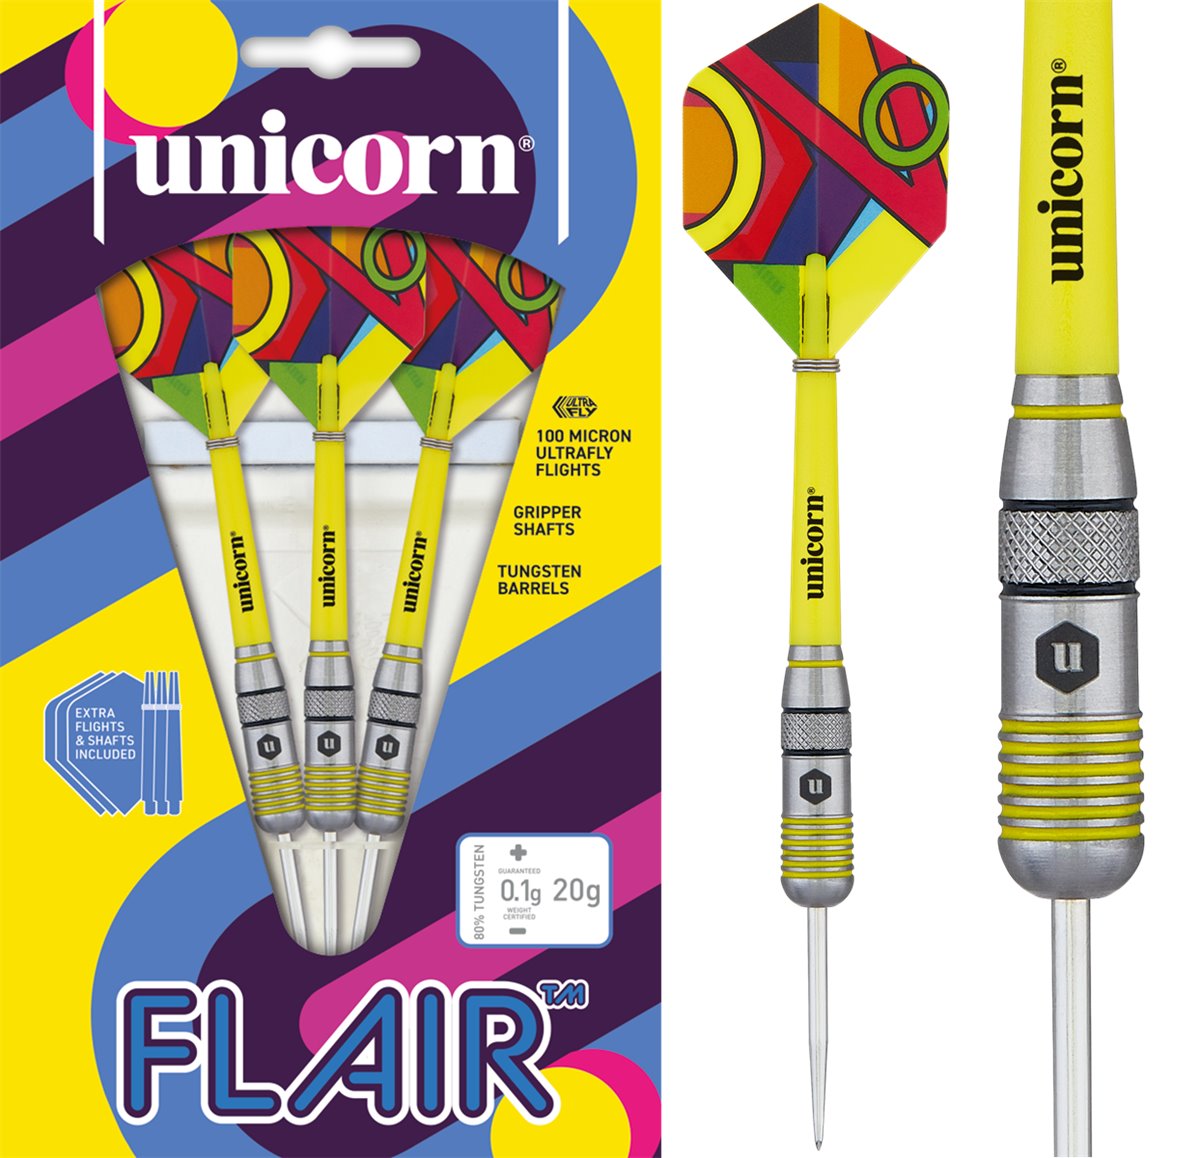 Unicorn Flair 1 80% Steeldarts 20 Gramm Steeldarts